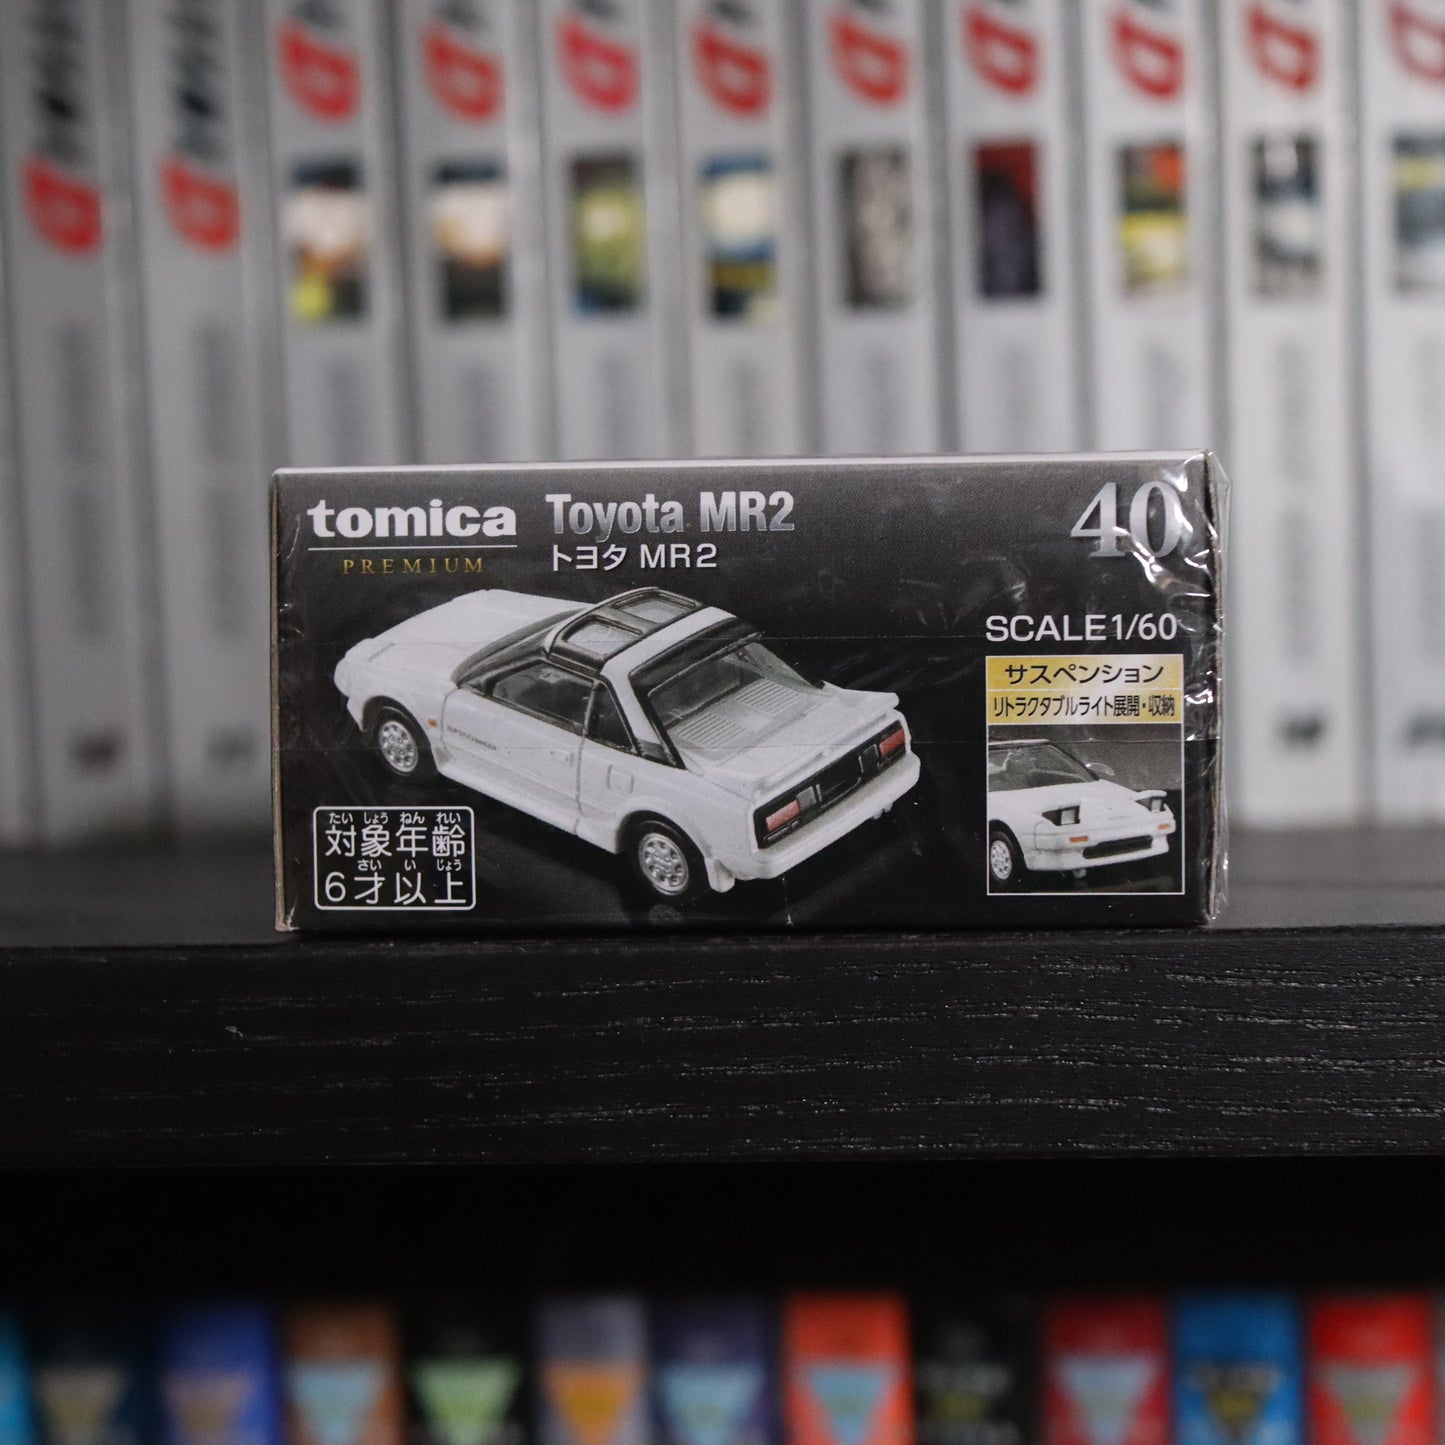 Tomica Premium Toyota MR2